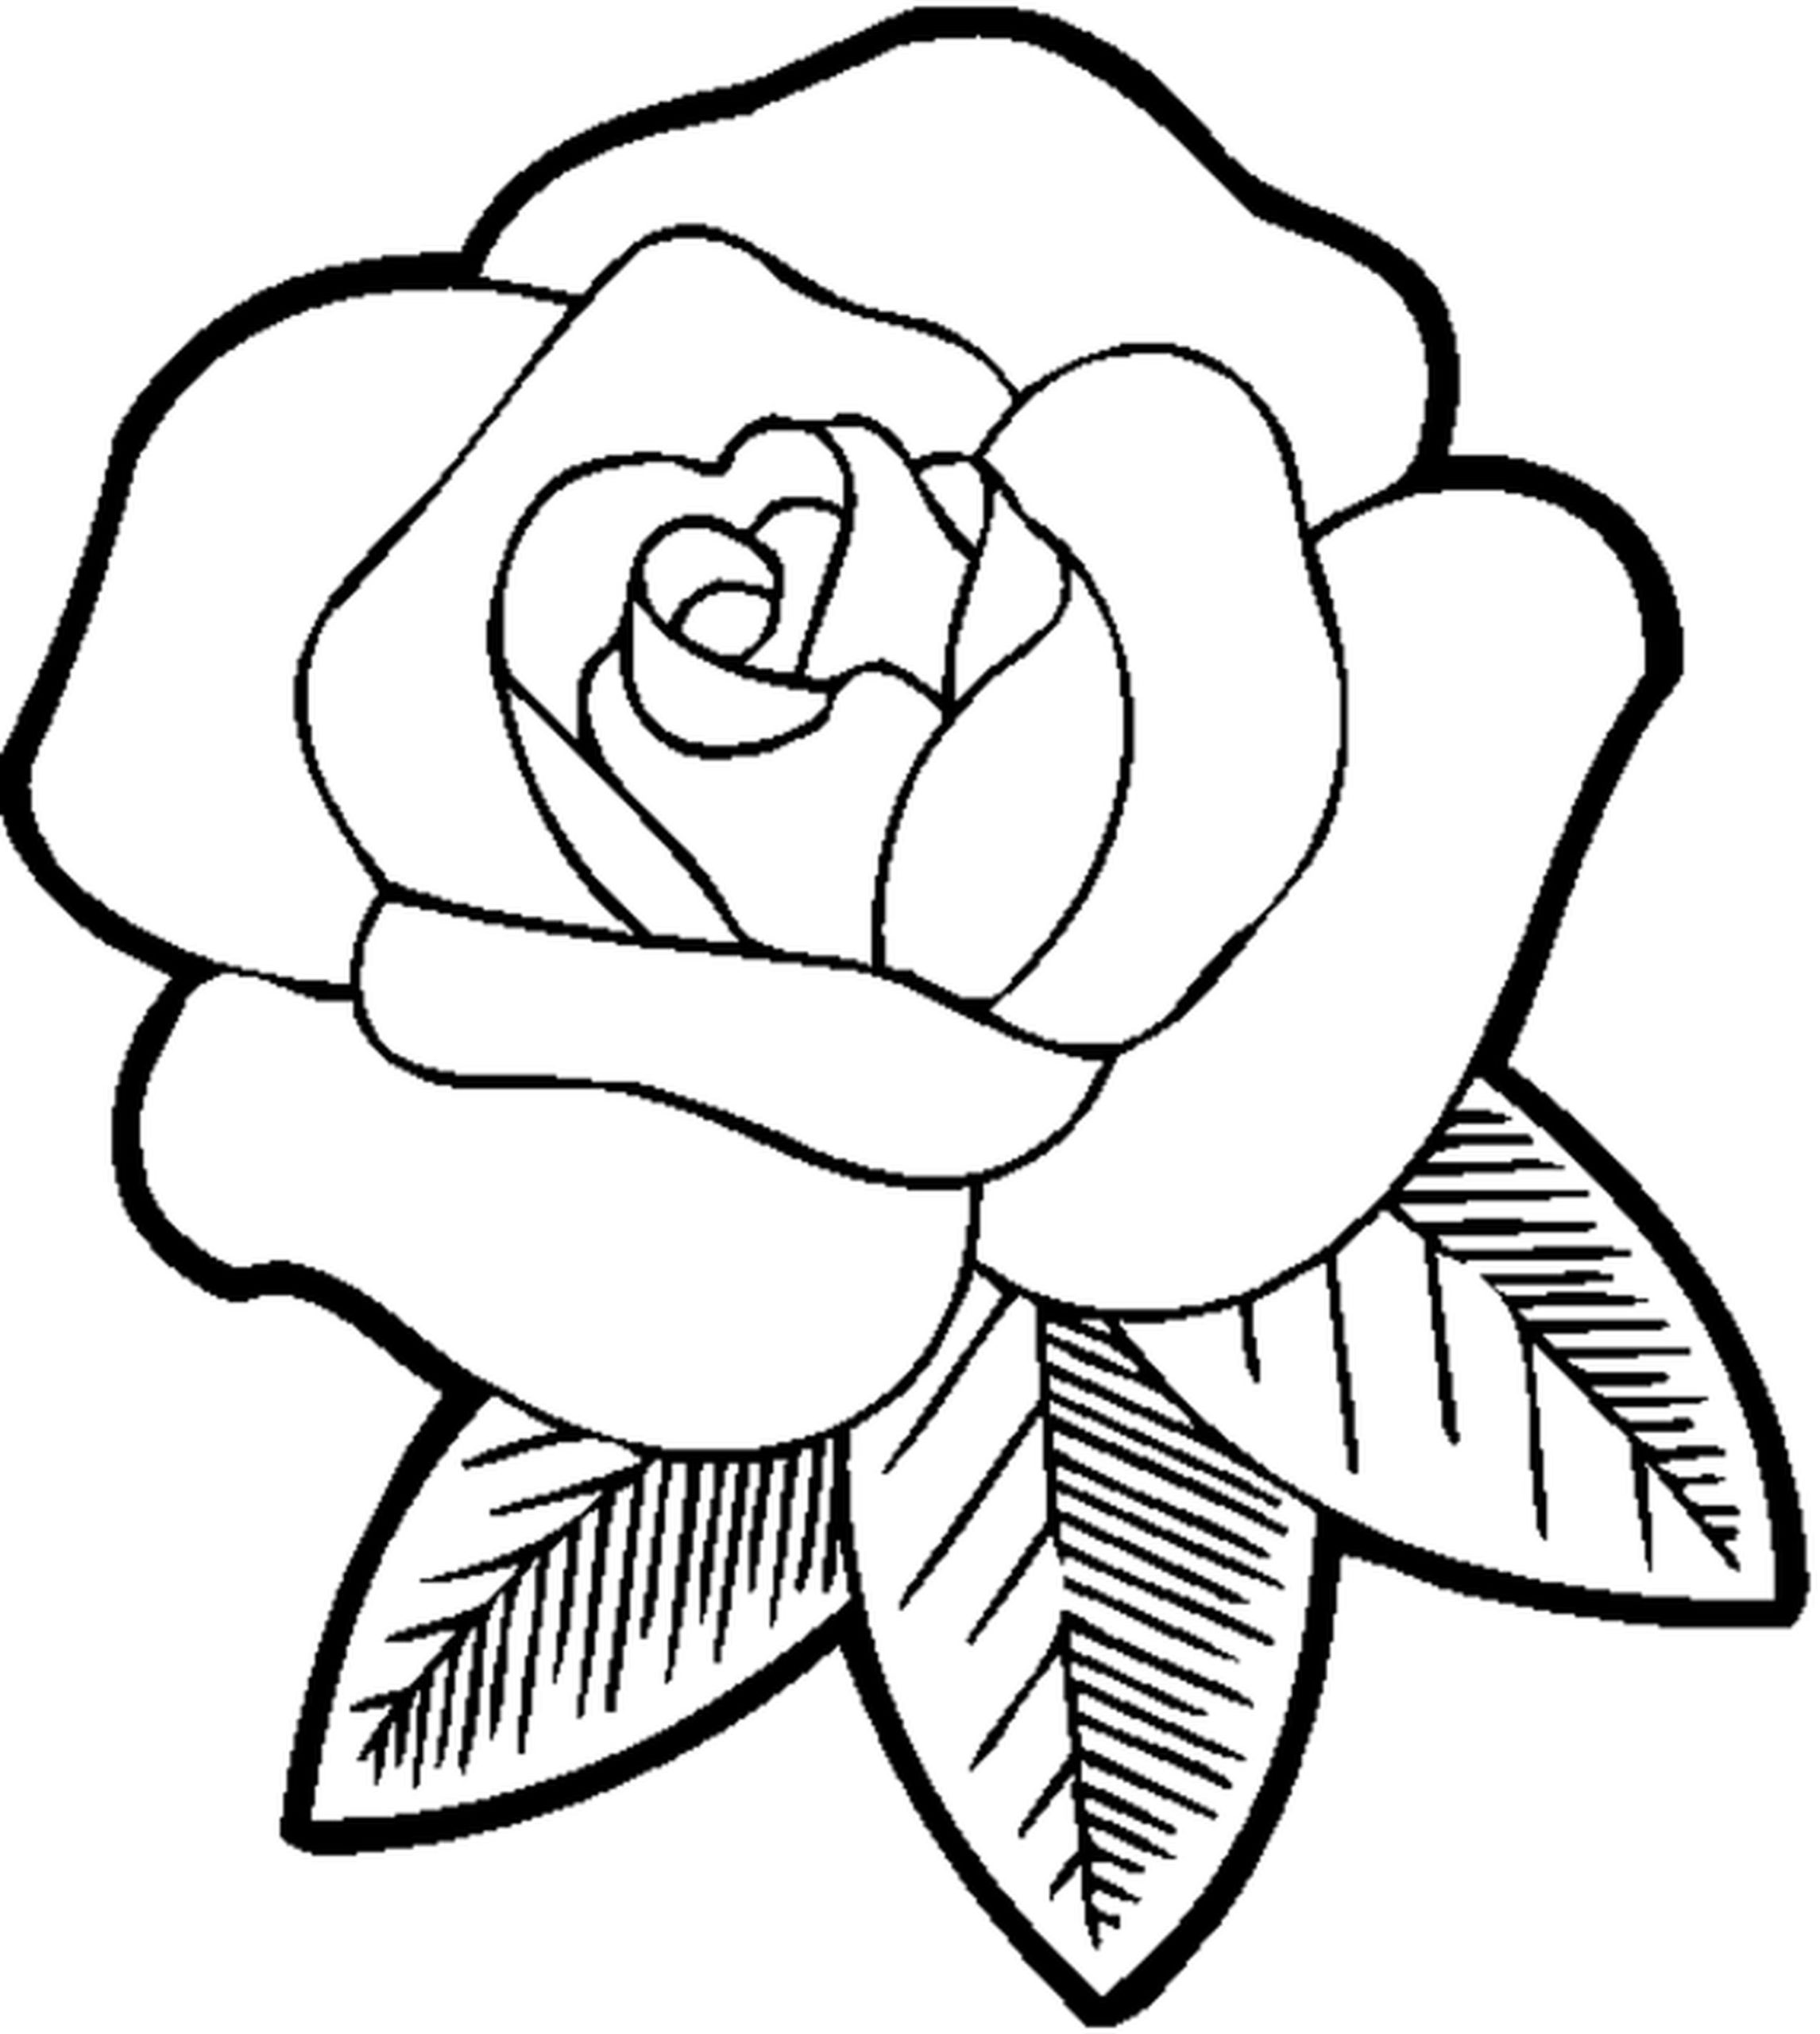 Hình ảnh Ban đầu Vẽ Hoa Tulip Nhỏ Màu Hồng Tươi PNG  Clipart Hoa Tulip  Nguyên Vẽ Tay PNG miễn phí tải tập tin PSDComment và Vector